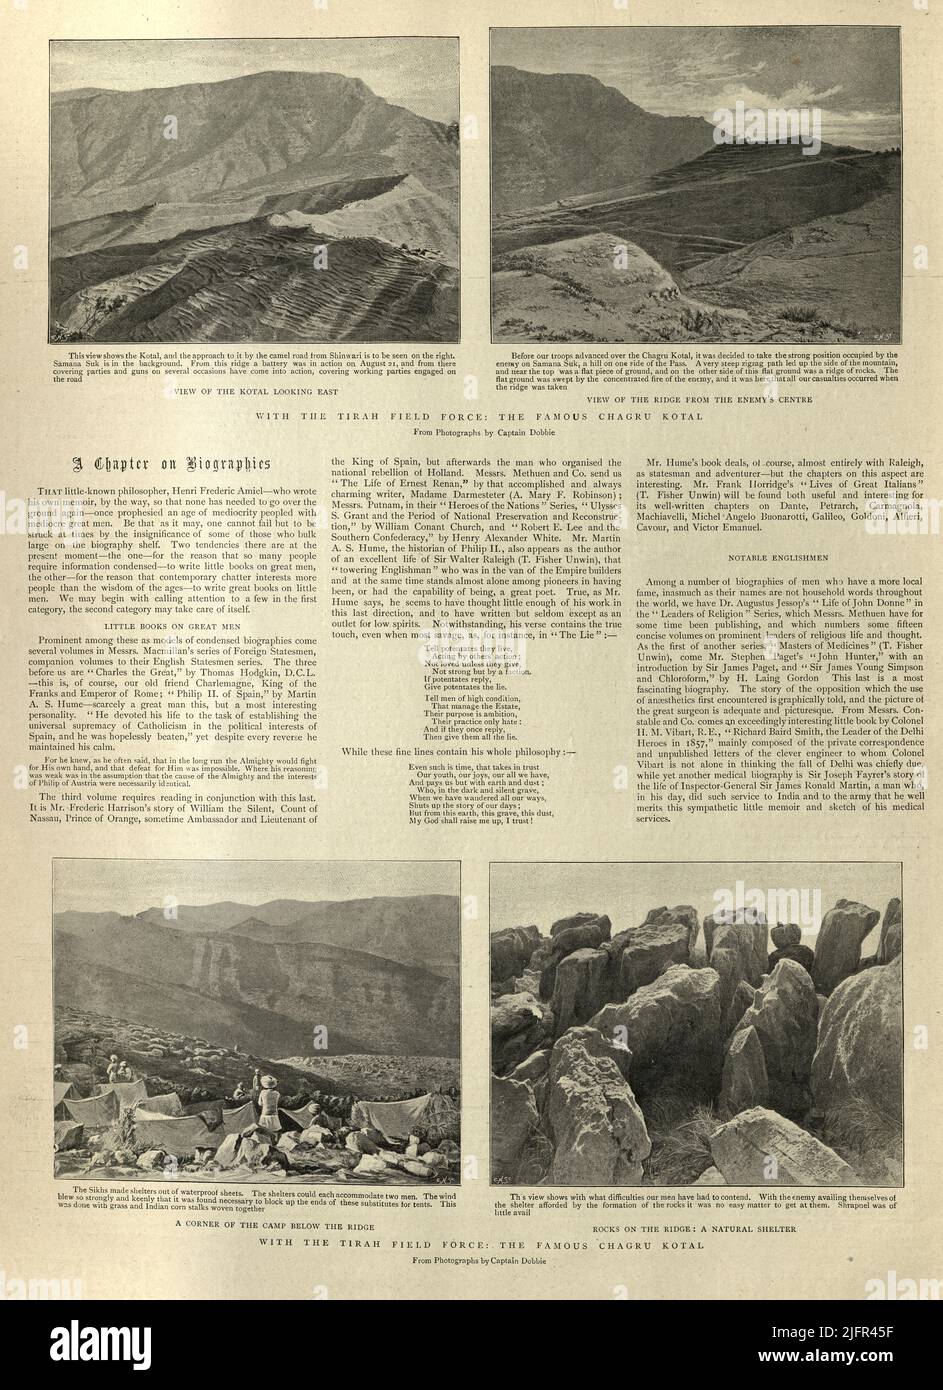 Las fotos de la campaña de Tirah a menudo referidas en los relatos británicos contemporáneos como la expedición de Tirah, fue una campaña de la frontera india de septiembre de 1897 a abril de 1898. Tirah es una zona montañosa del país en lo que se conocía formalmente como zonas tribales administradas federalmente en Pakistán, ahora provincia de Khyber Pakhtunkhwa. Foto de stock